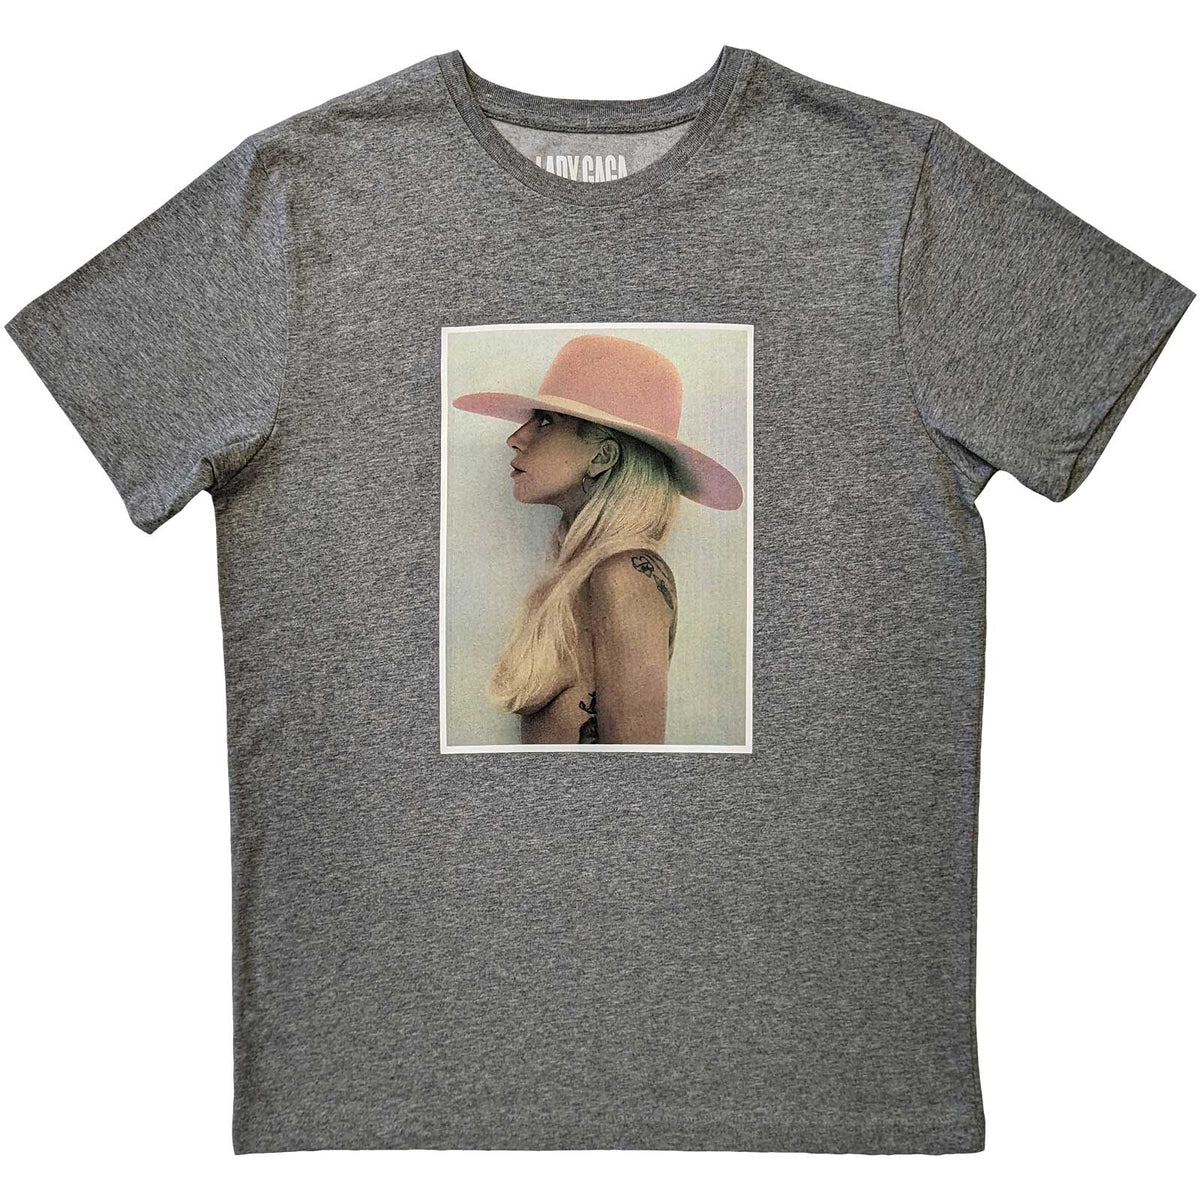 T-shirt Lady Gaga - Chapeau rose - Conception unisexe sous licence officielle